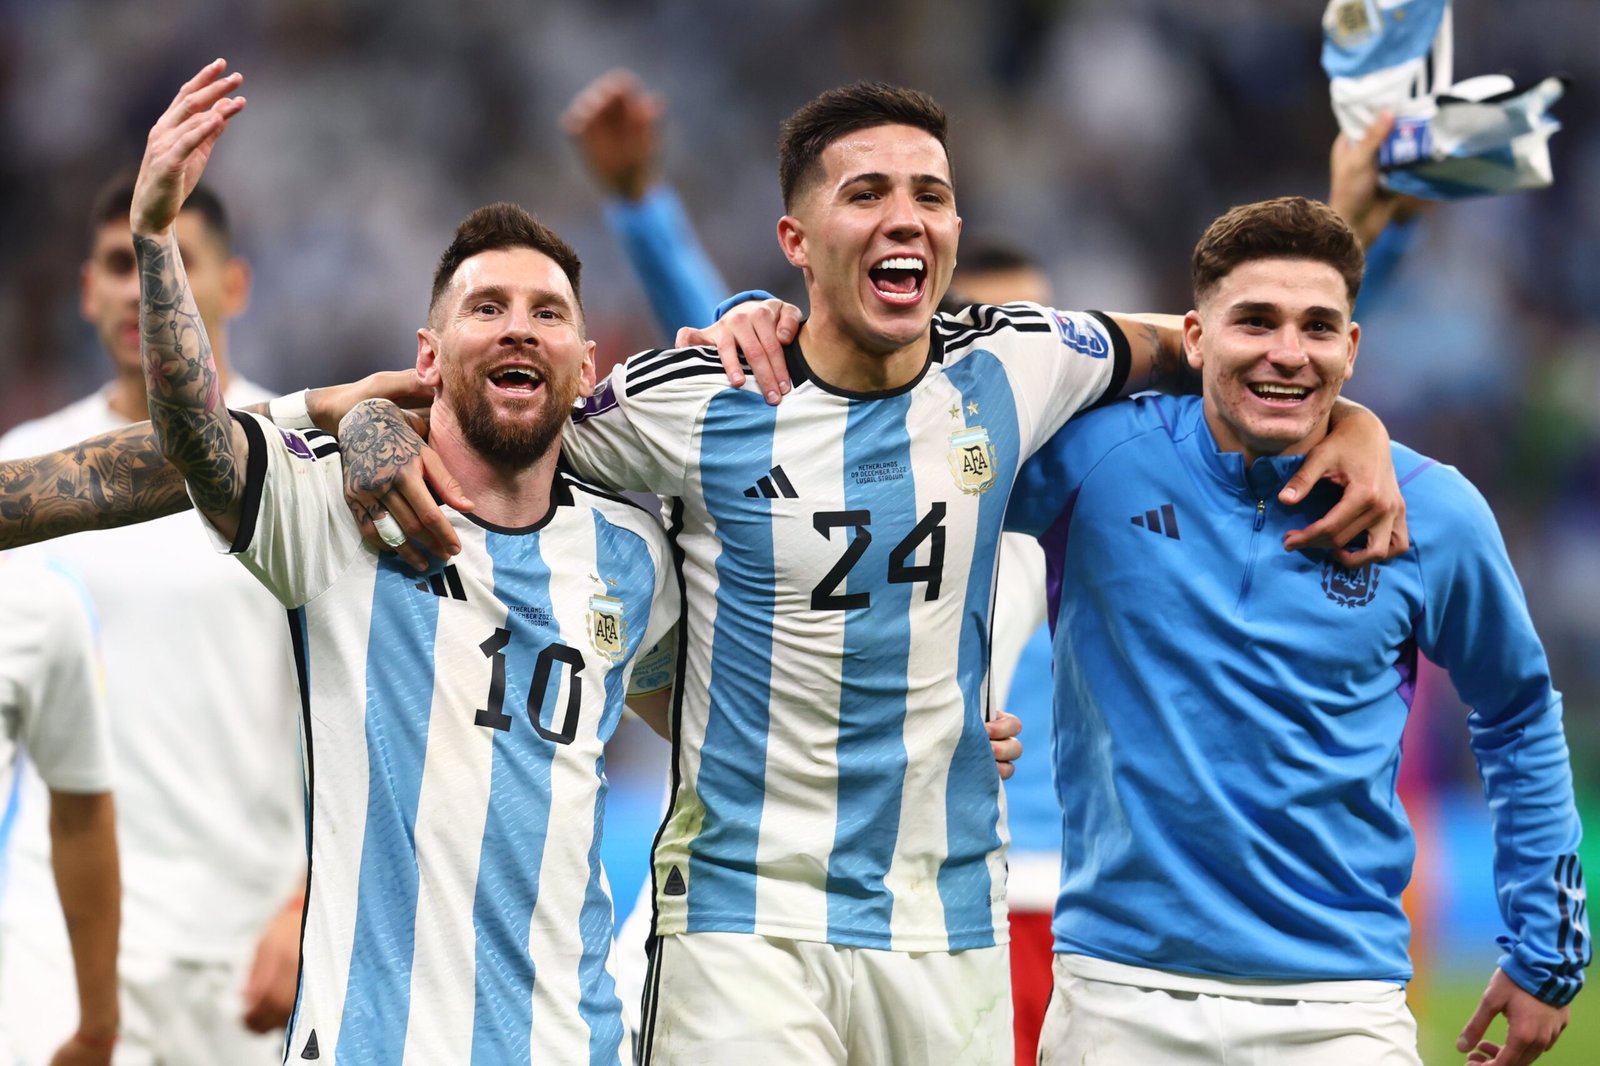 El plantel del seleccionado argentino se entrenará hoy luego de la sufrida clasificación a la semifinal del Mundial de Qatar 2022 que será el próximo martes frente a Croacia.